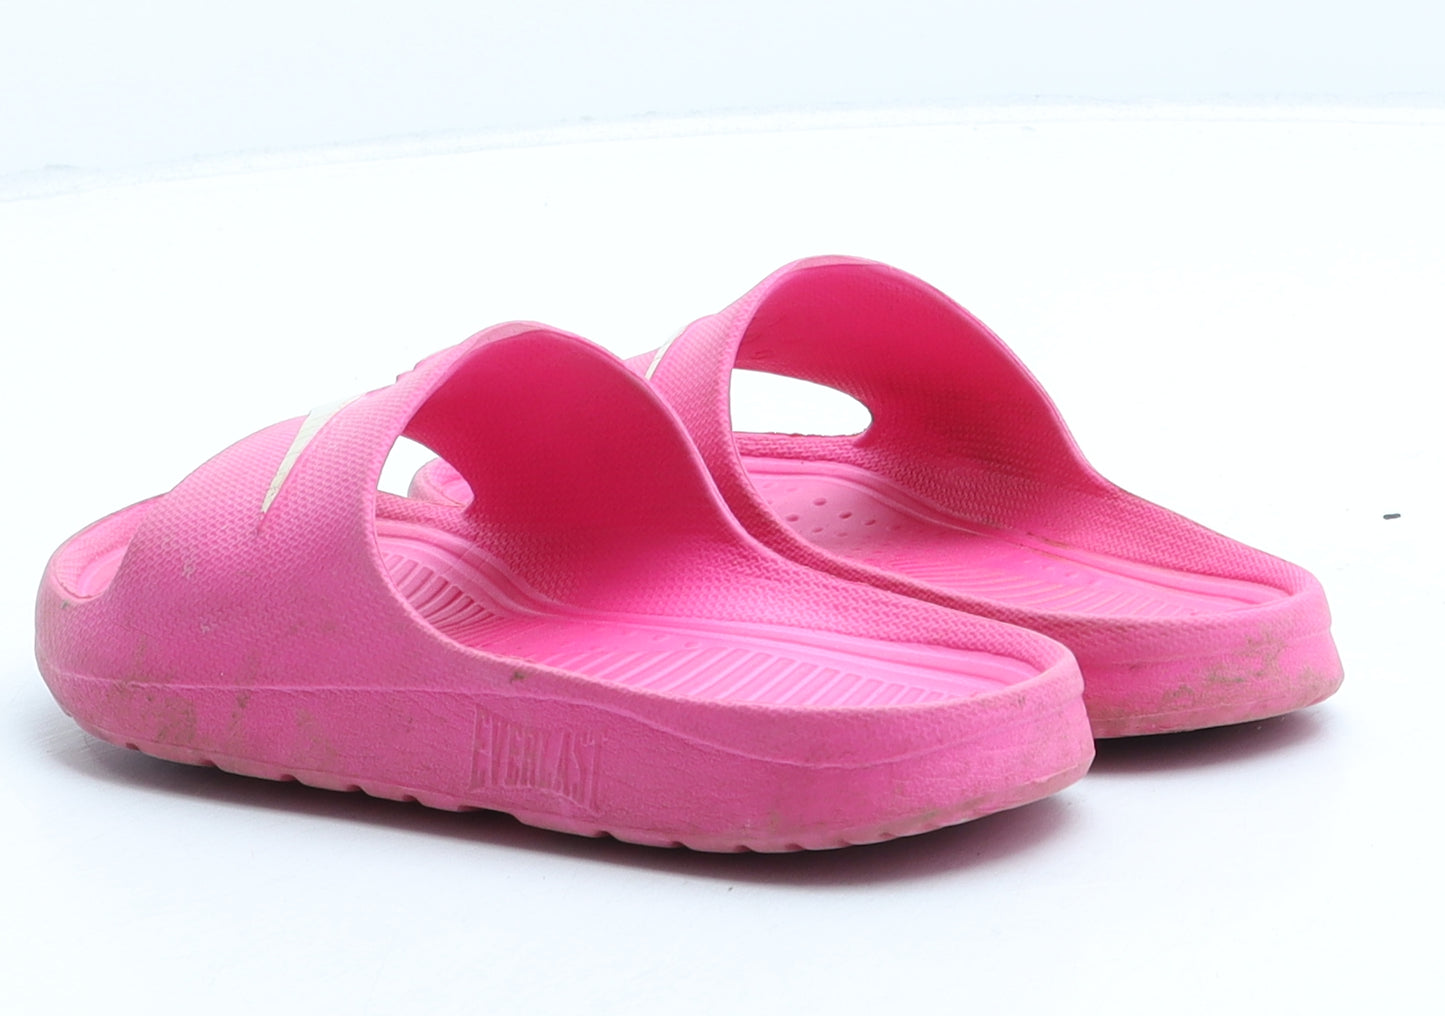 Everlast Girls Pink Rubber Slider Sandal UK 11